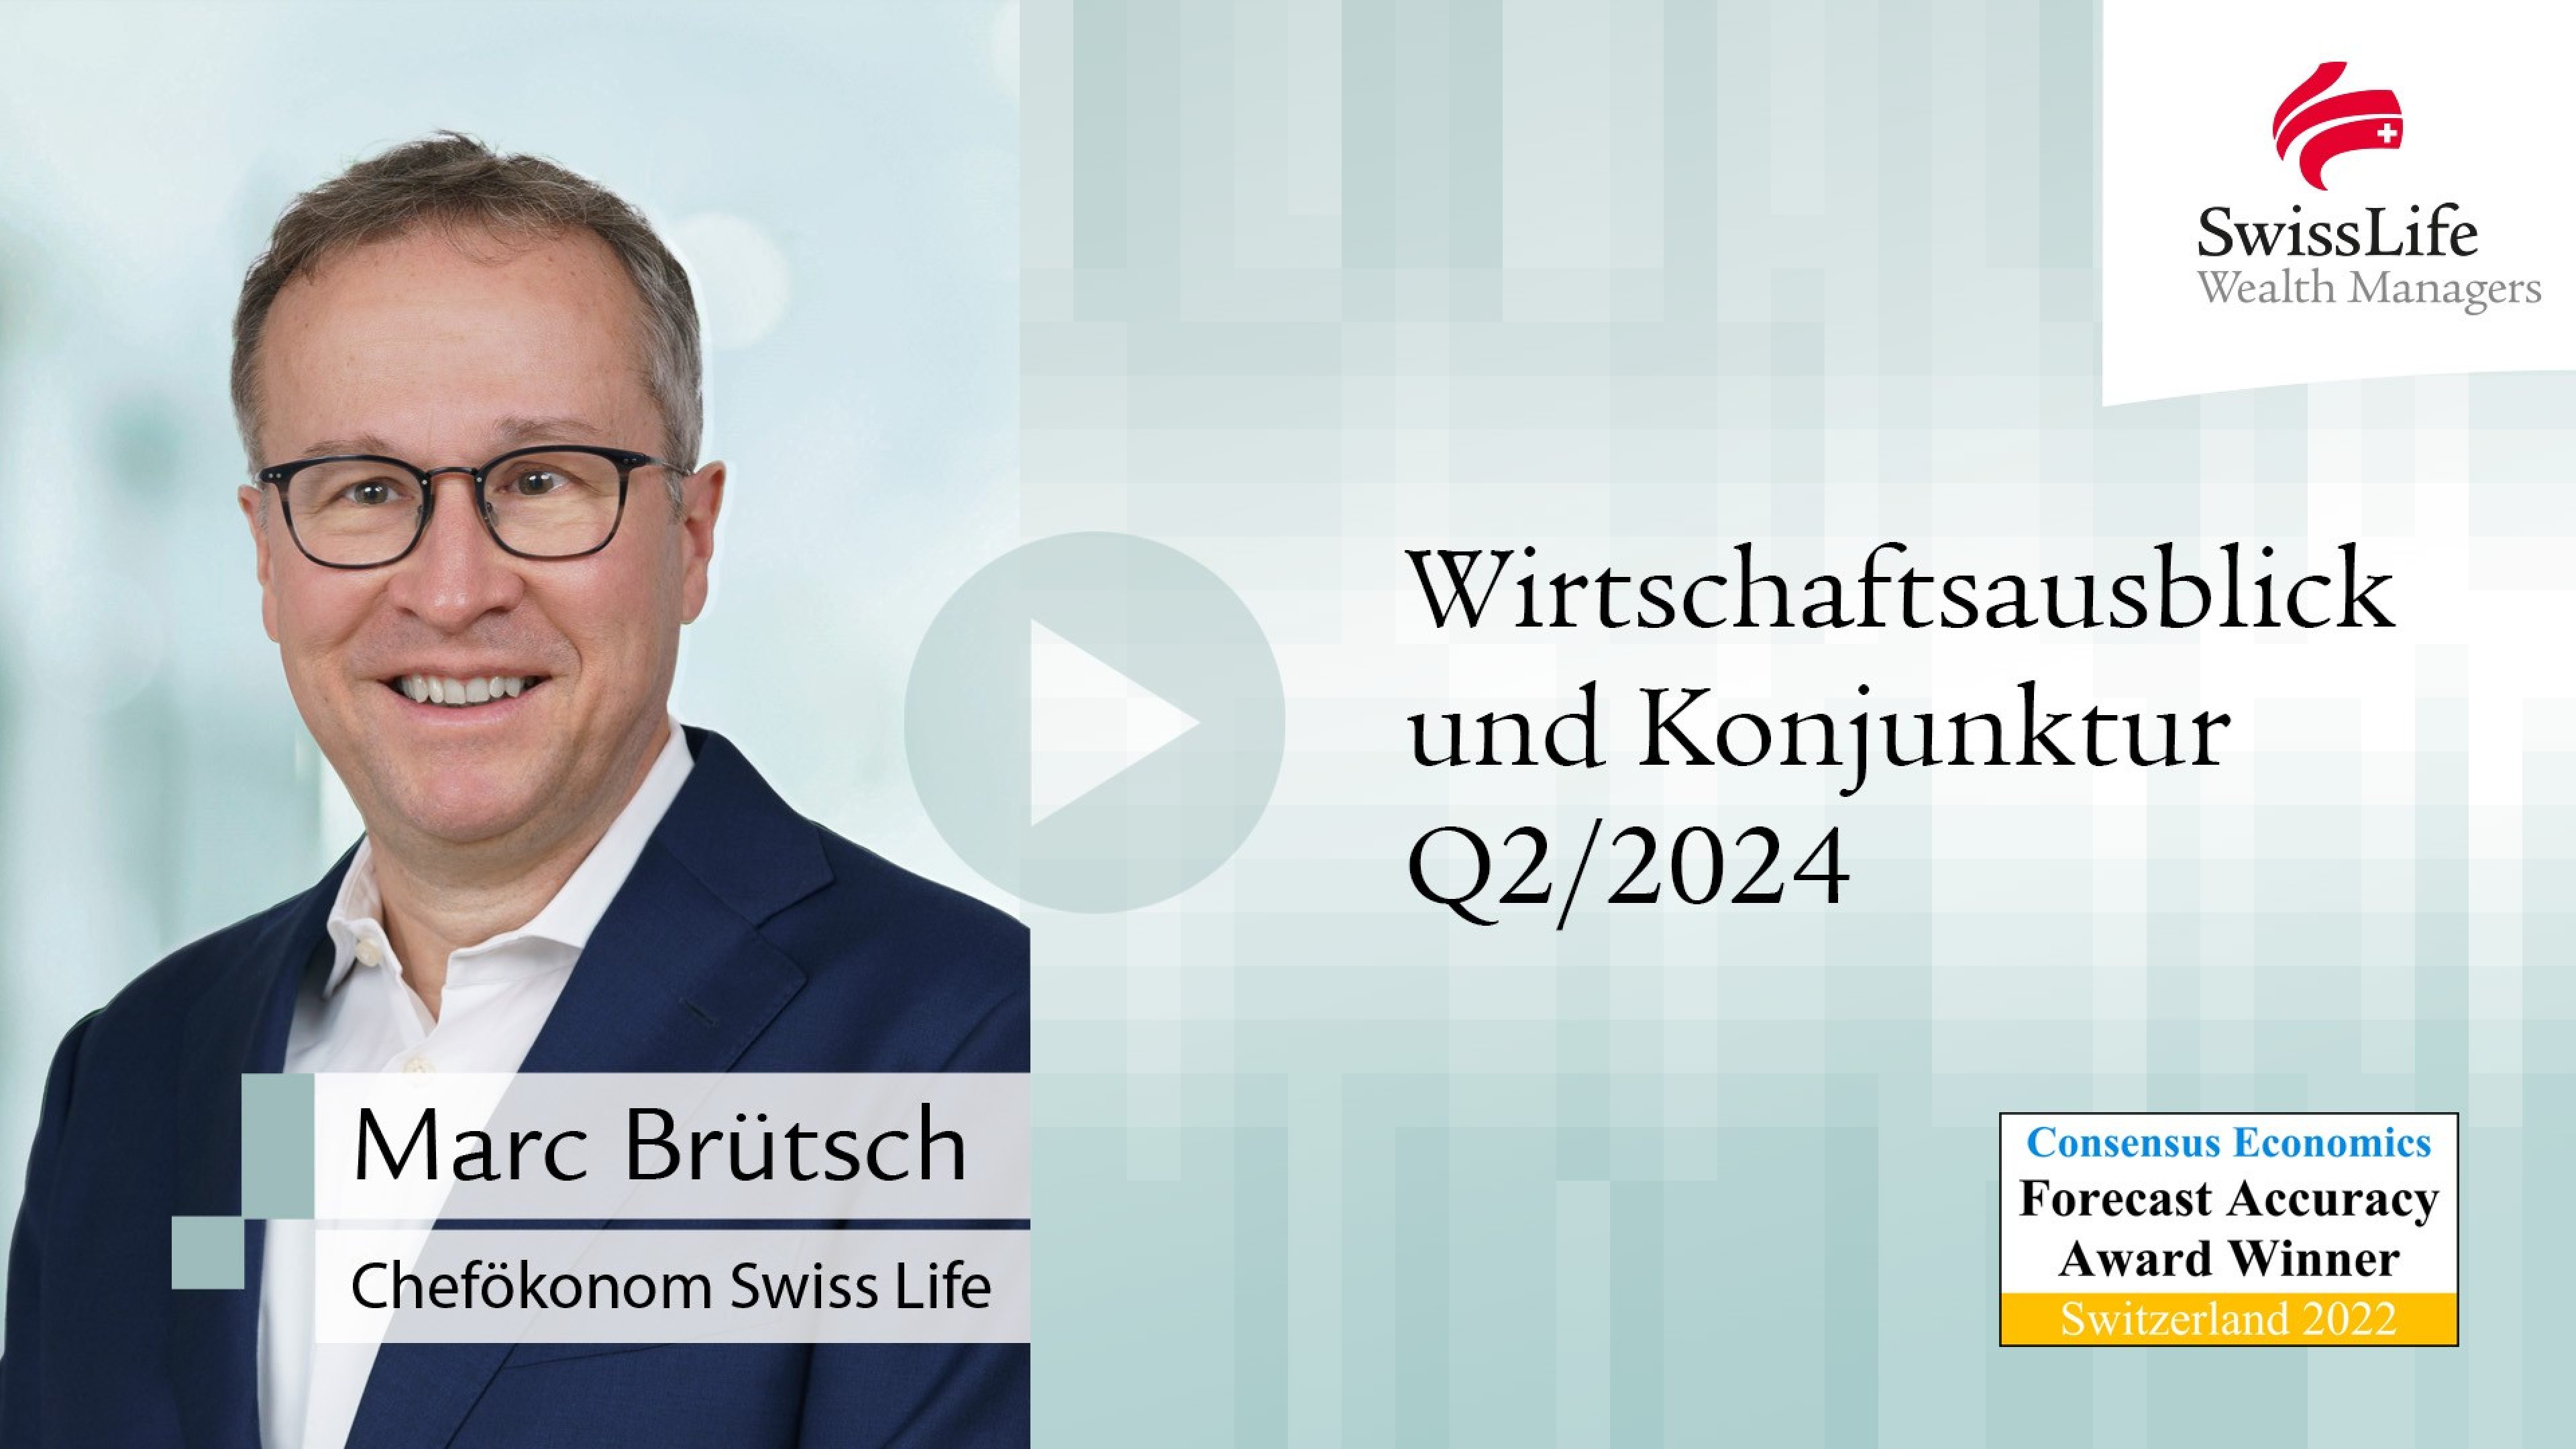 Quartalsvideo 2-2024 Wirtschaftsausblick und Konjunktur von Swiss Life Wealth Managers